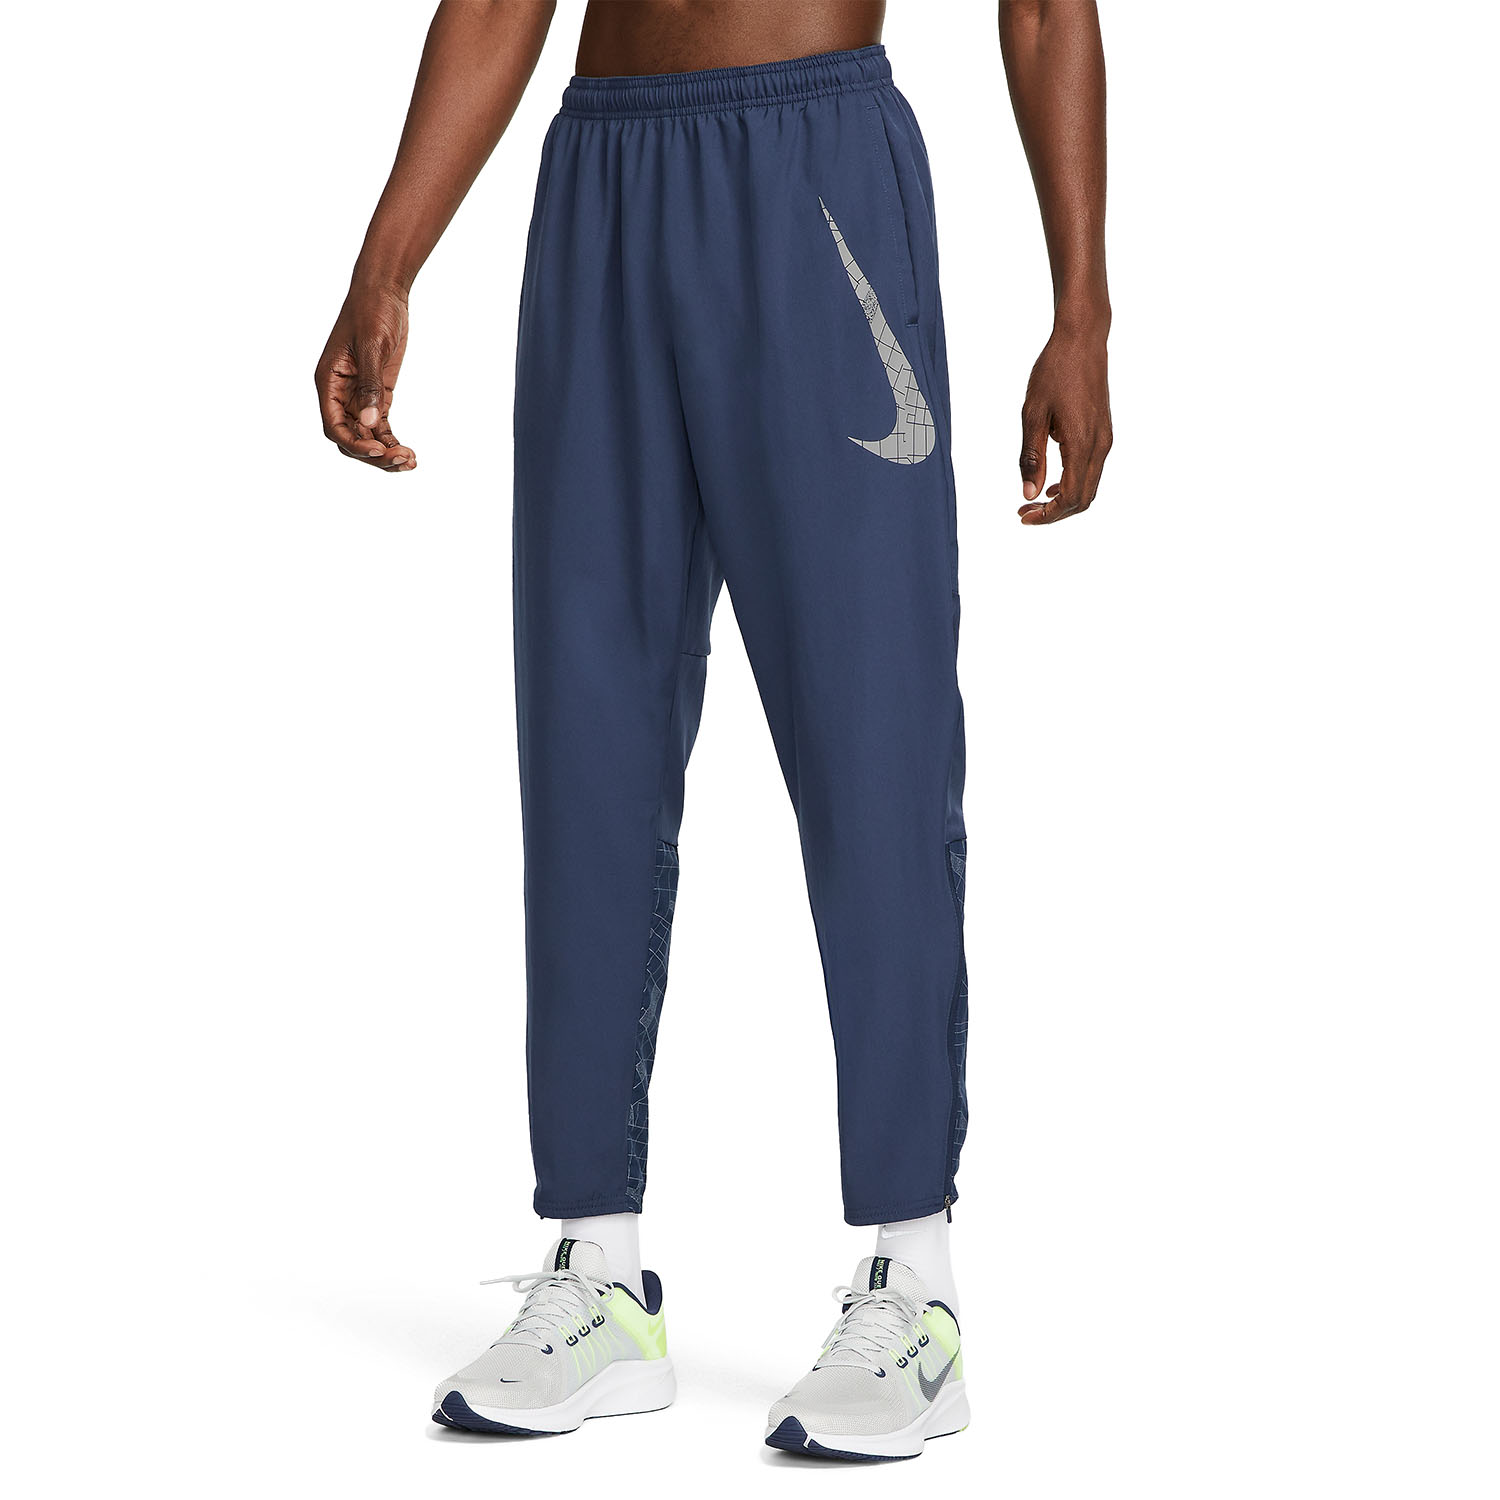 Nike Run Division Challenger Men's Running Pants - Black